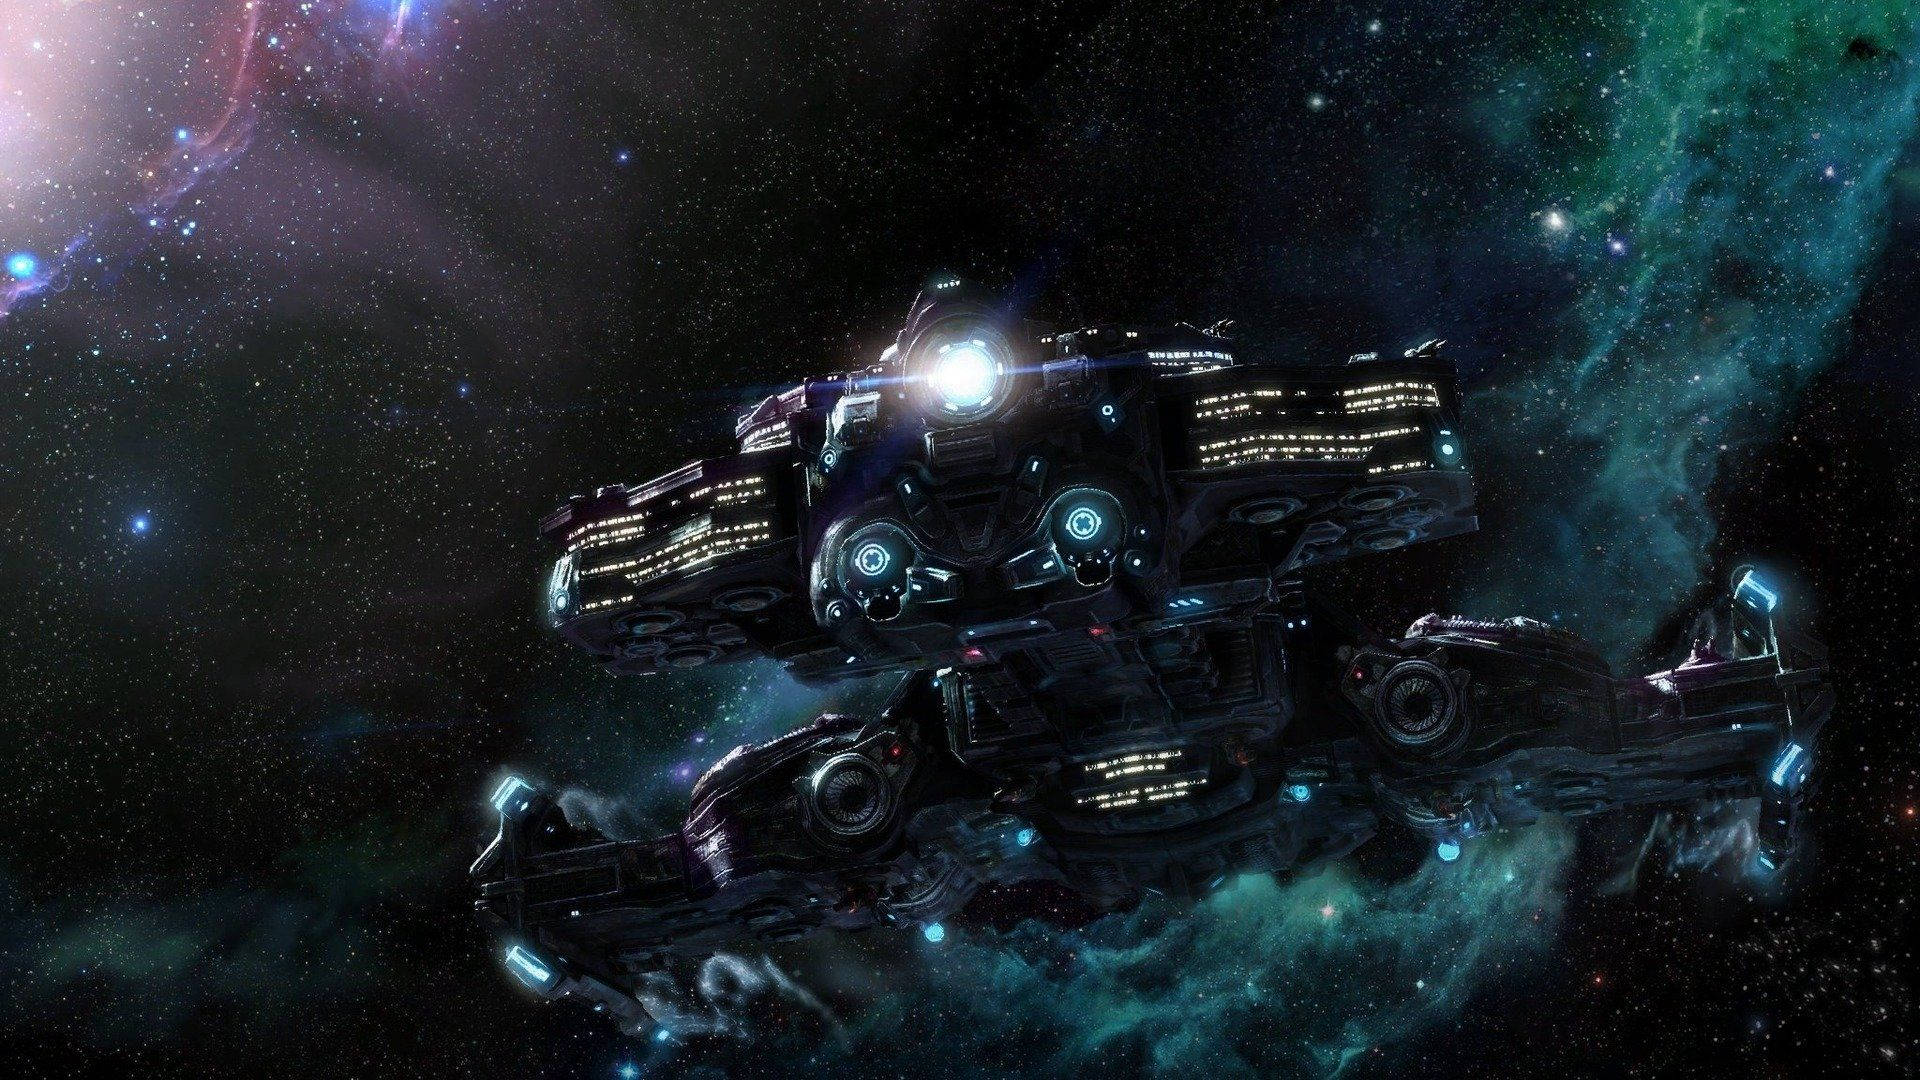 Behemoth Starcraft Spaceship Wallpaper